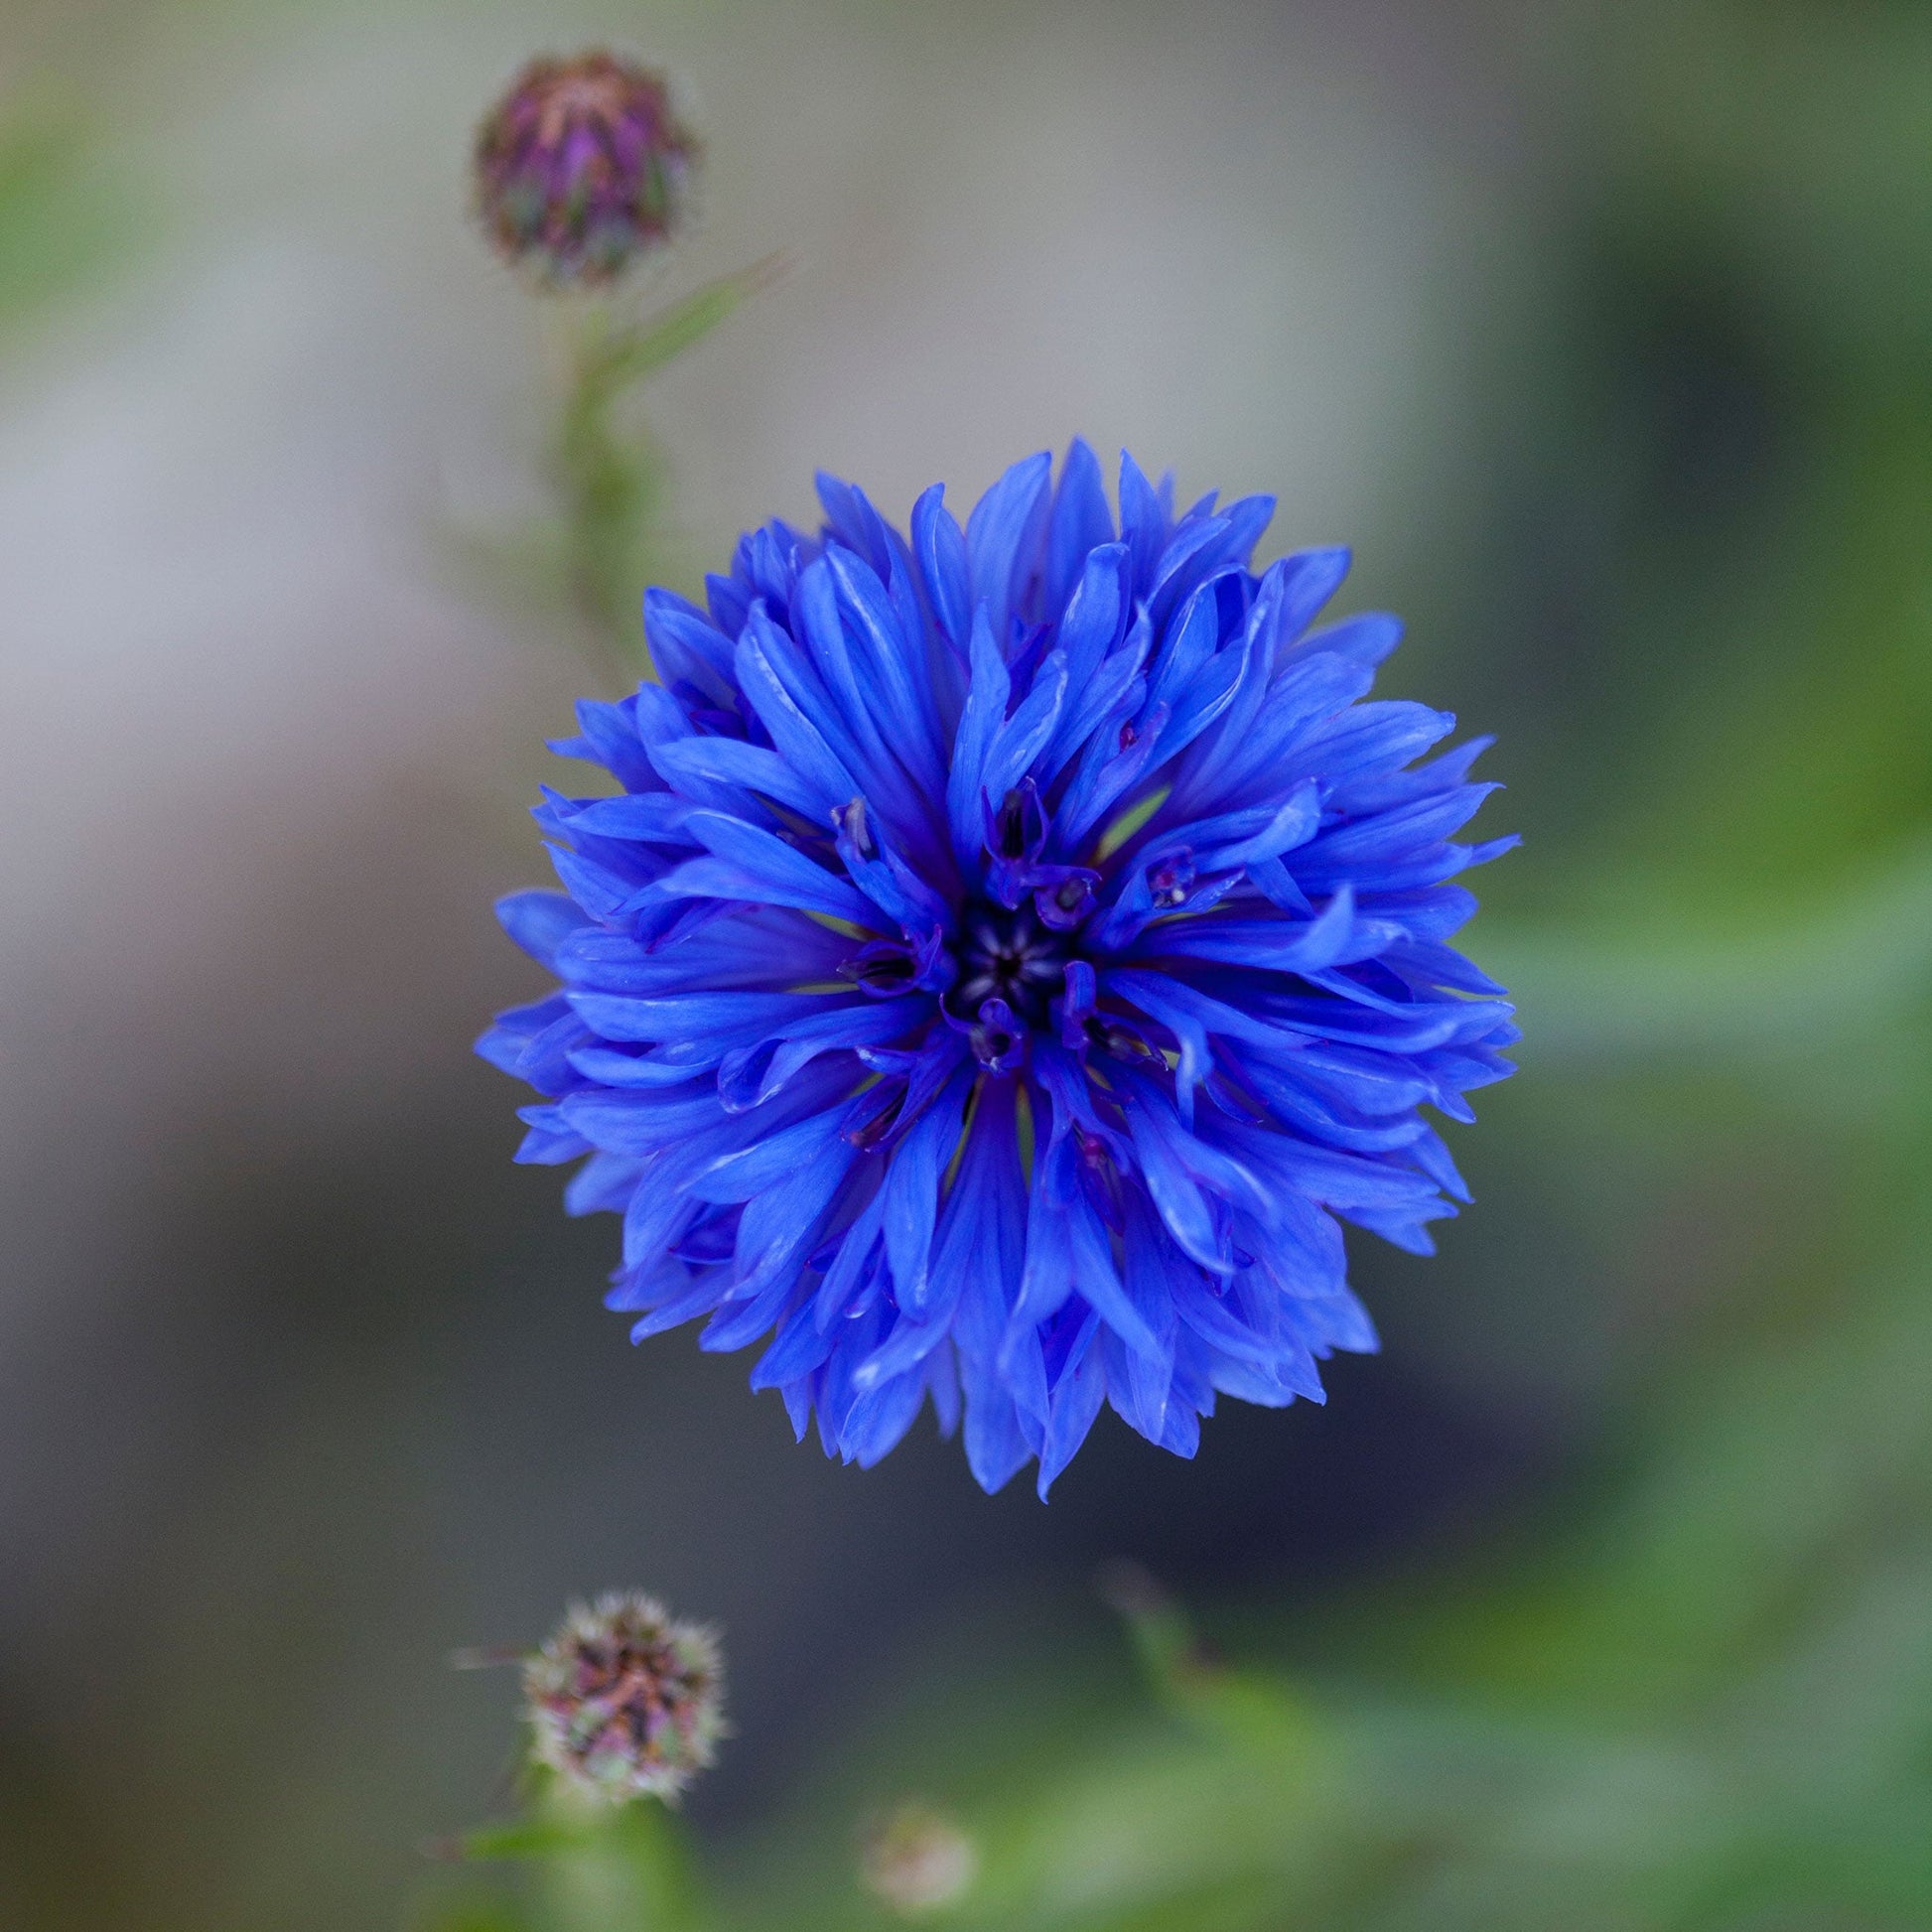 Cornflower / Bachelor Button Seeds - Dwarf Blue - 1/4 Pound, Flower Seeds, Eden Brothers